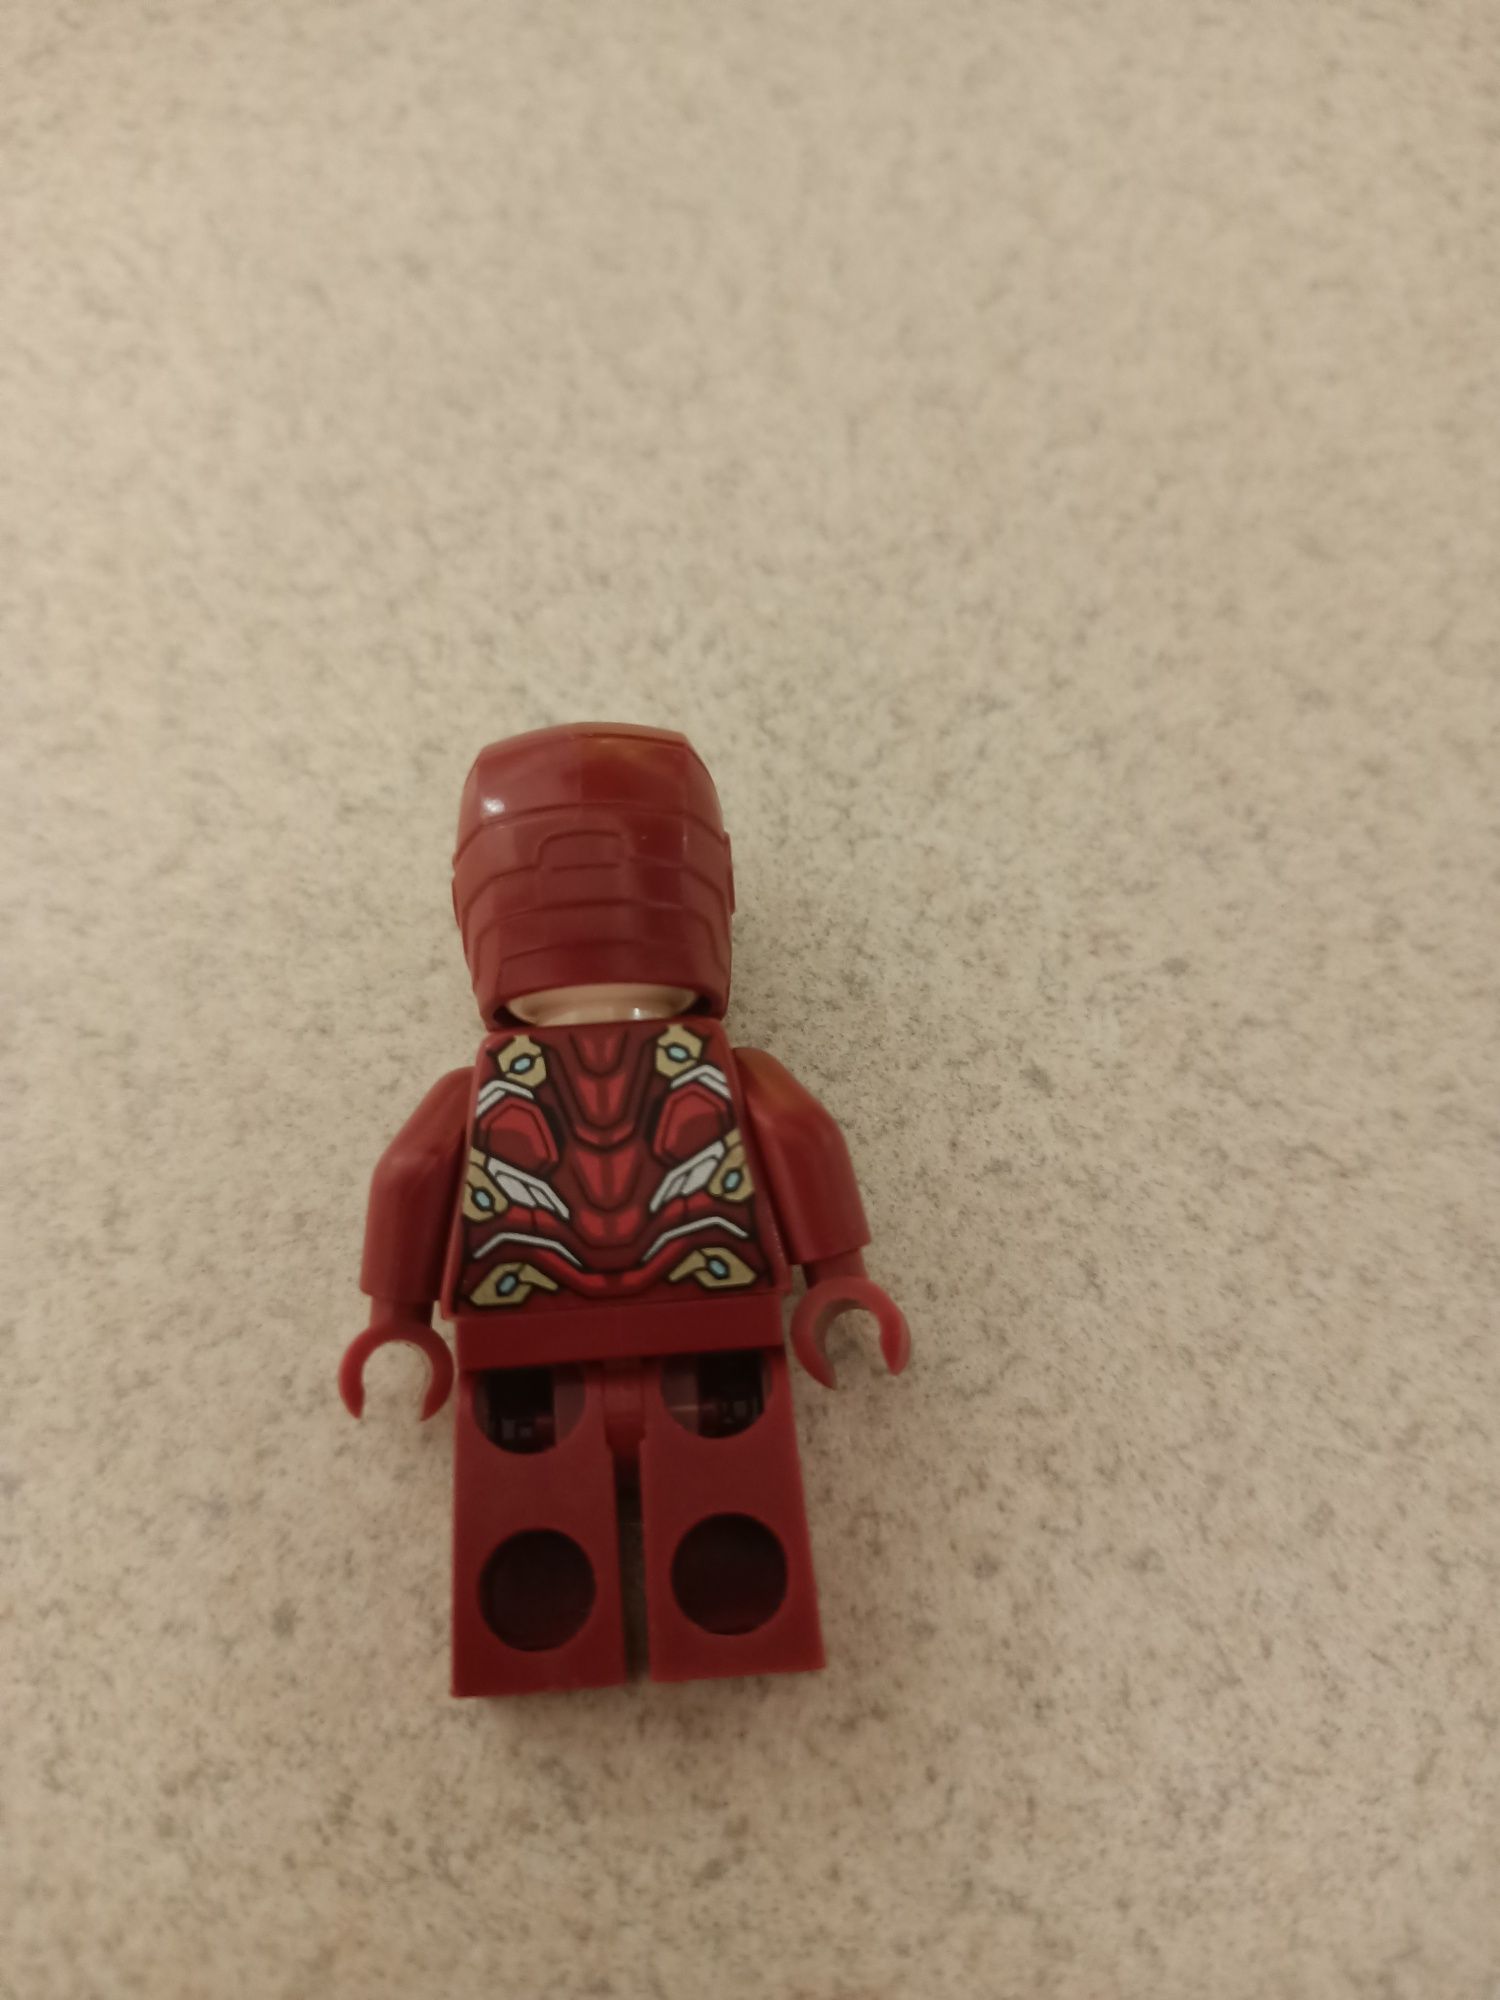 Lego Iron Man.          .